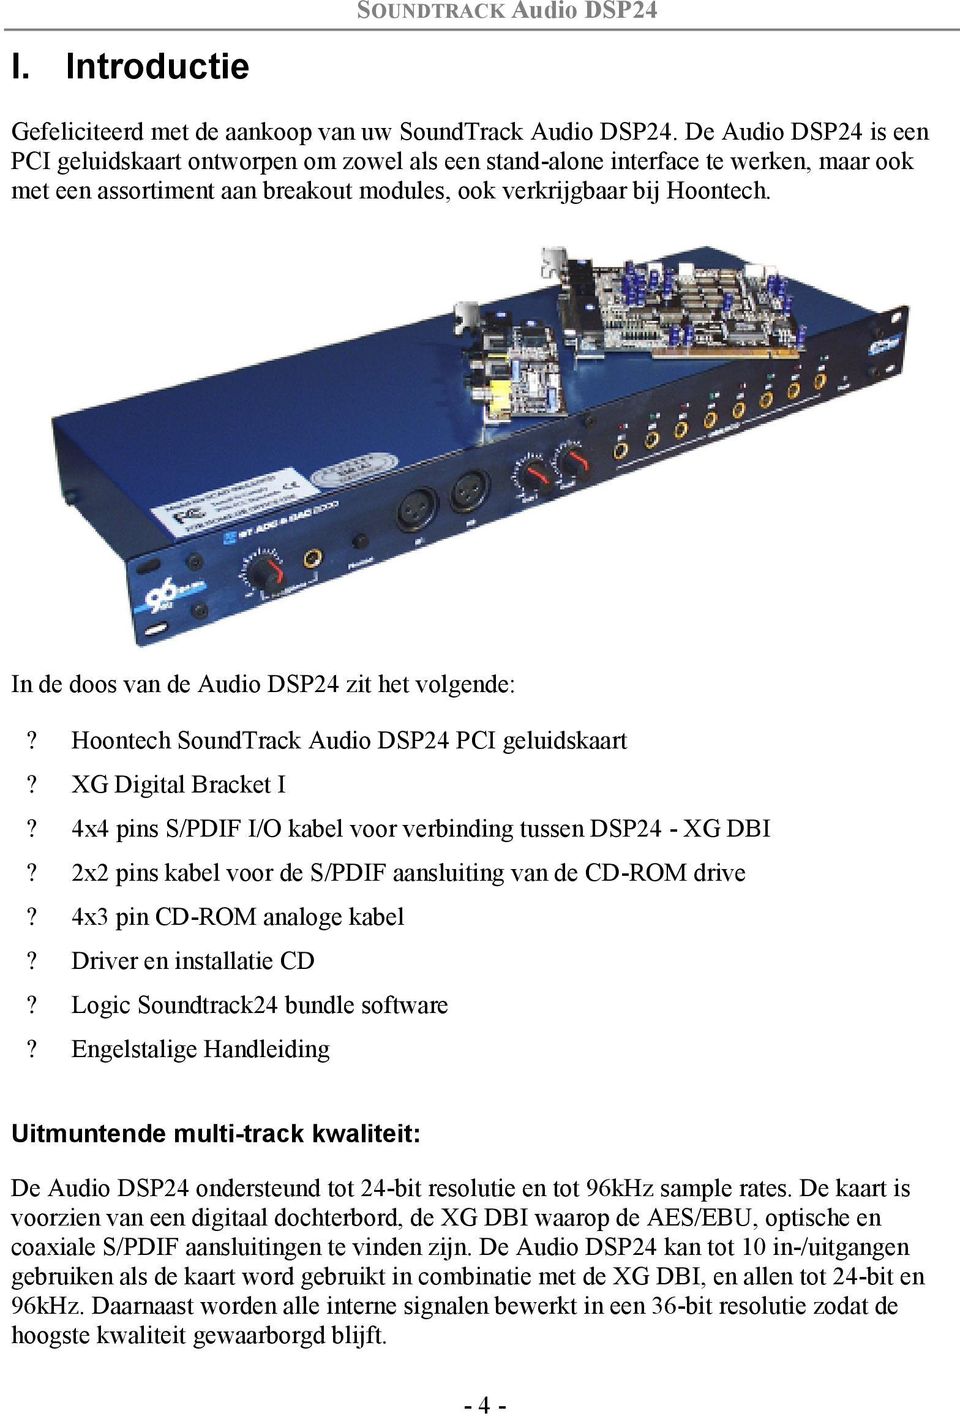 In de doos van de Audio DSP24 zit het volgende:? Hoontech SoundTrack Audio DSP24 PCI geluidskaart? XG Digital Bracket I? 4x4 pins S/PDIF I/O kabel voor verbinding tussen DSP24 - XG DBI?